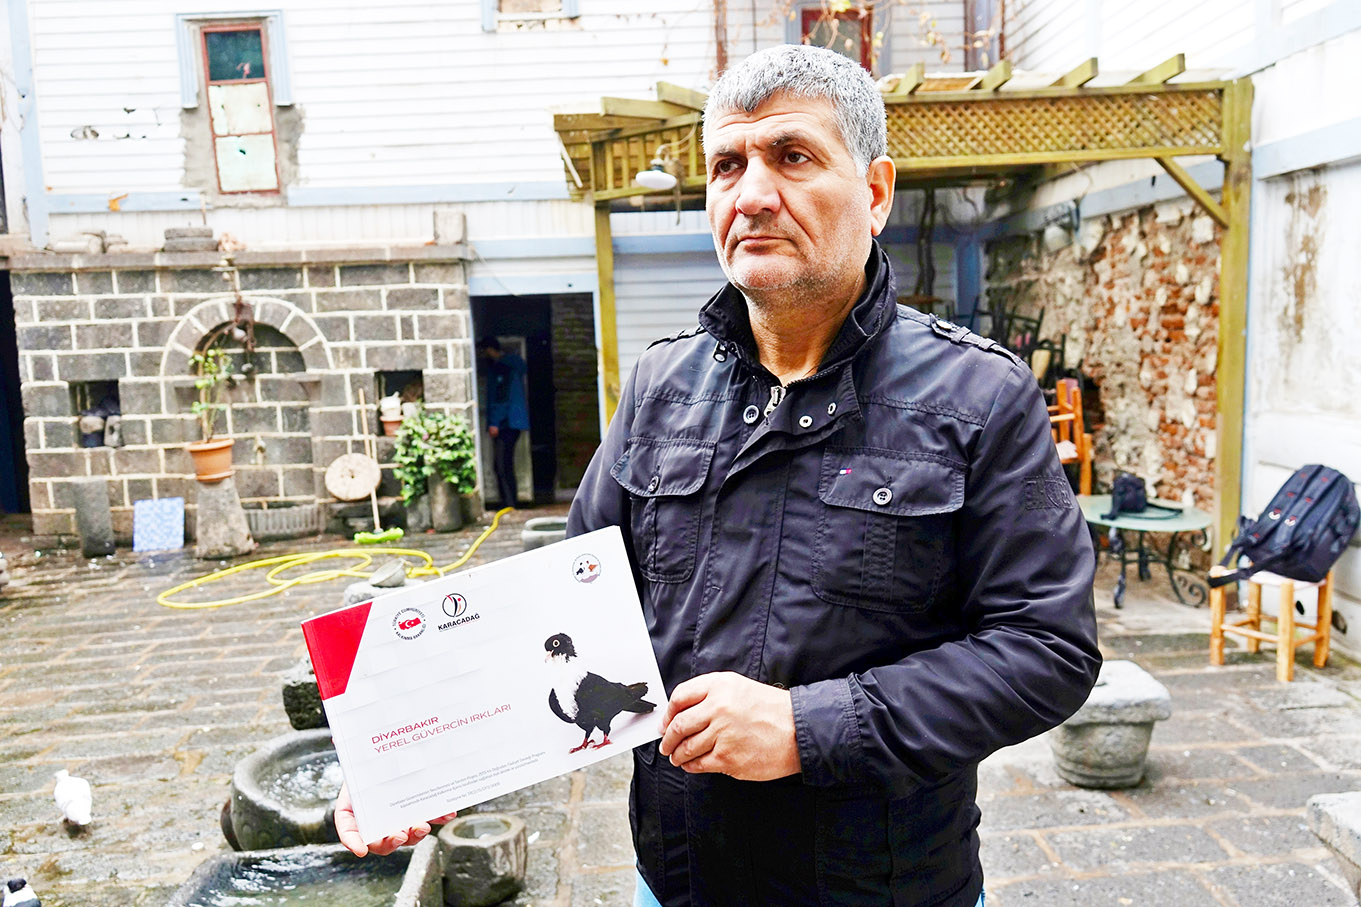 Diyarbakır Güvercinleri ile Posta Güvercinleri Derneği Başkanı Hasan Hüseyin Tuğcu